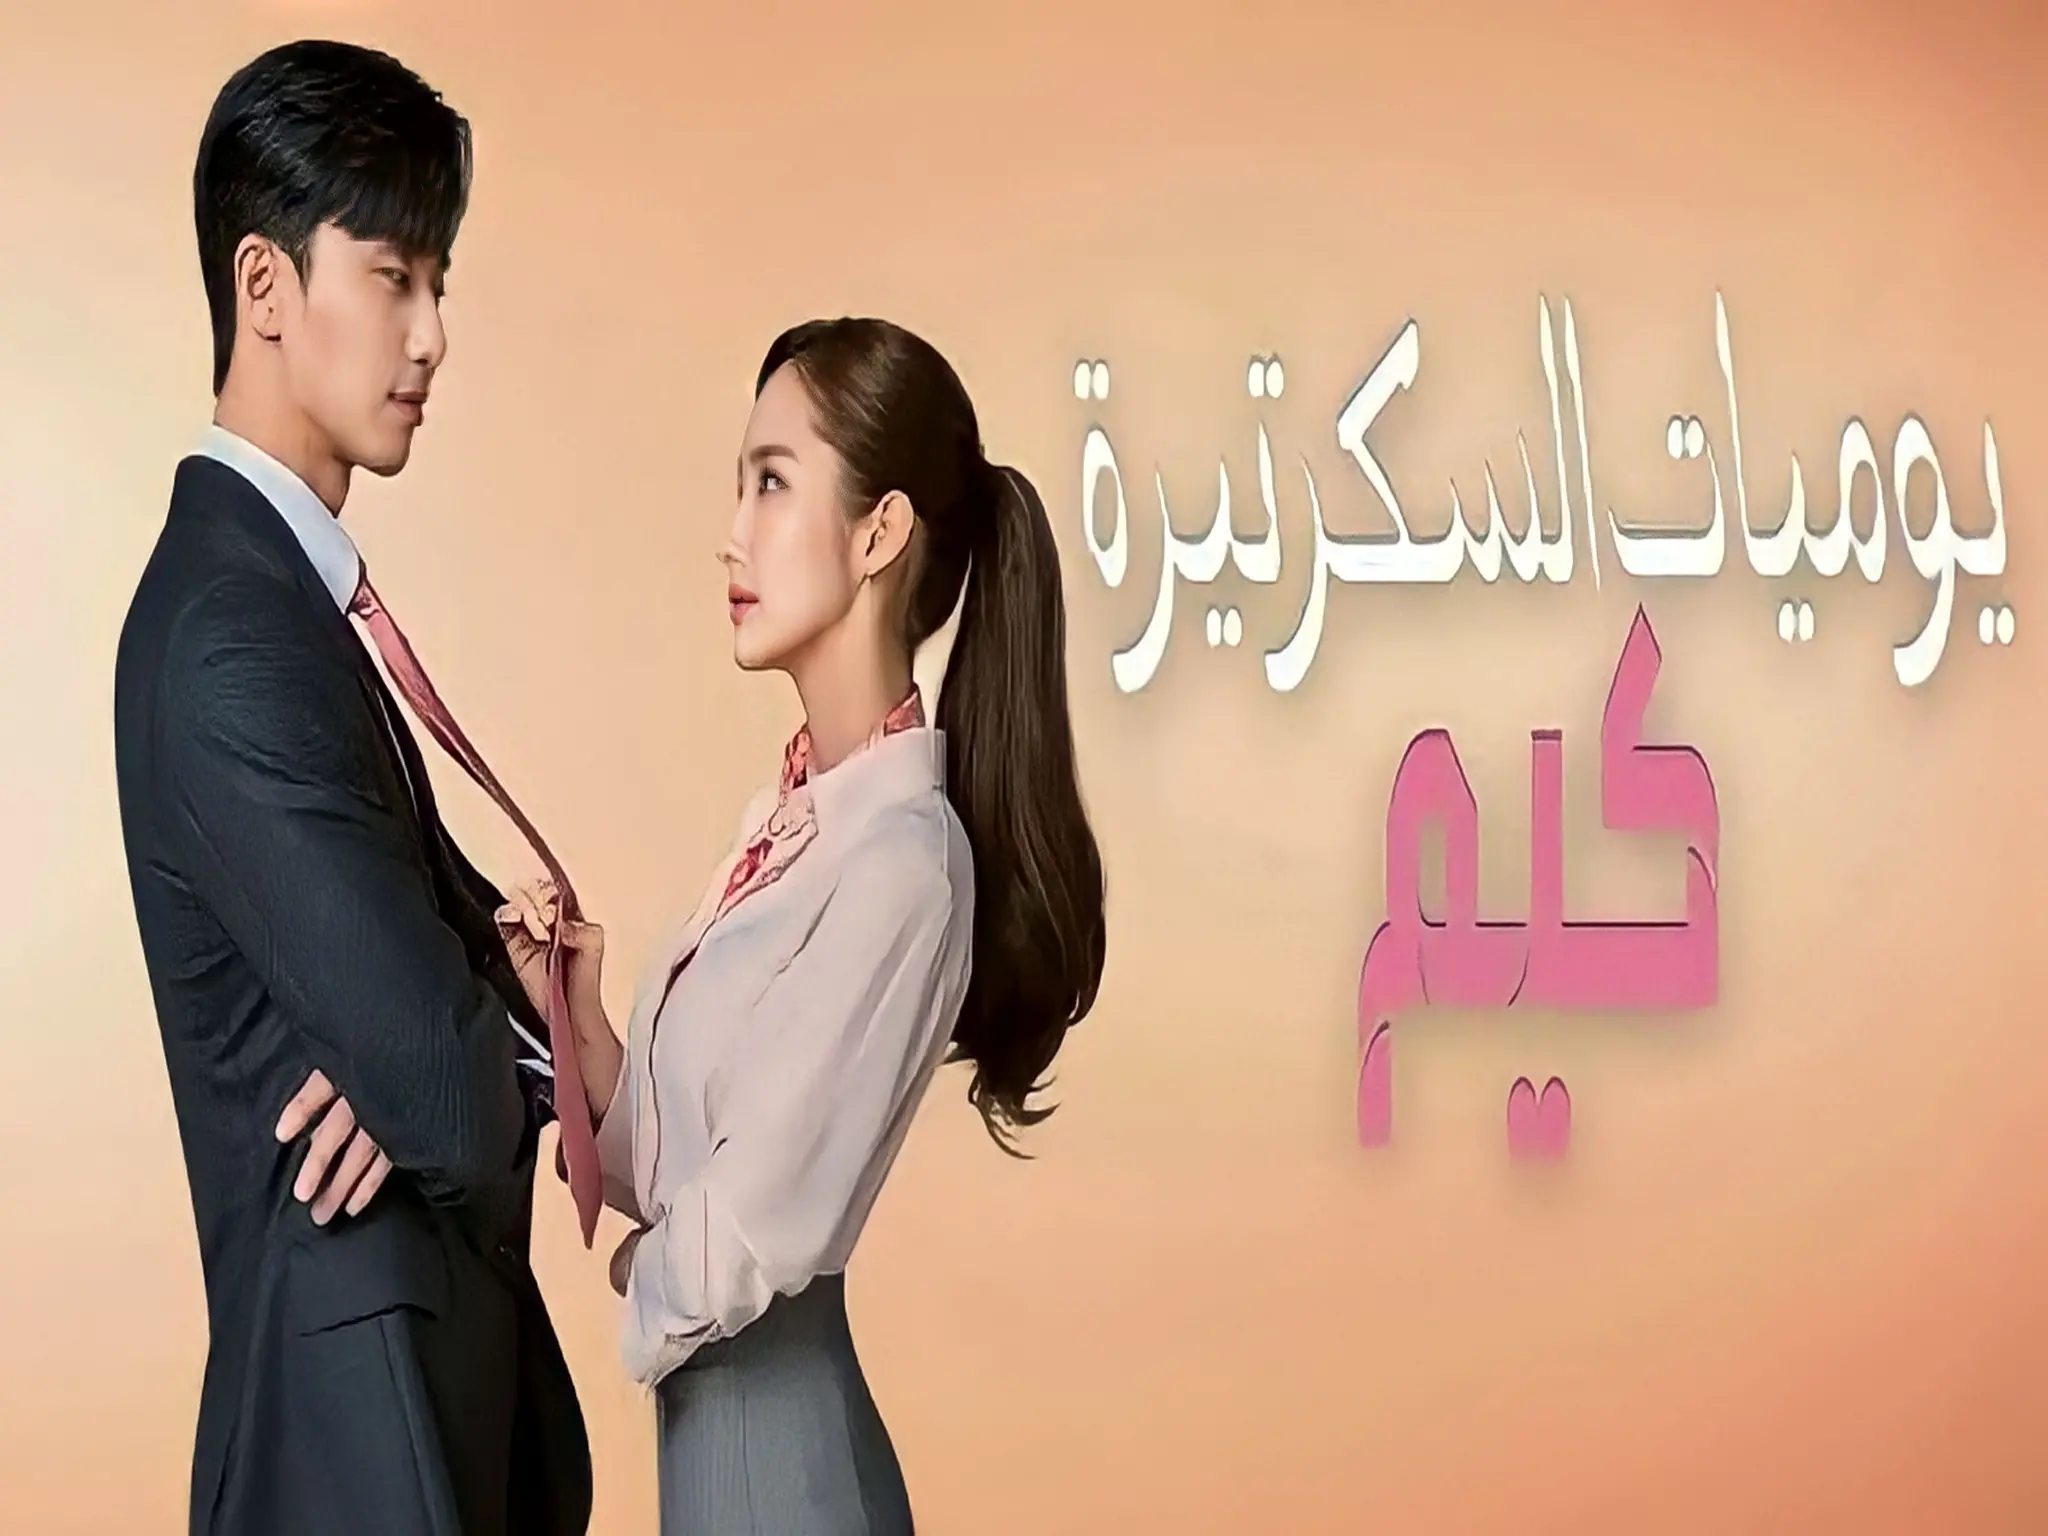 مواعيد عرض مسلسل "يوميات السكرتيرة كيم" على قناة MBC 4 الفضائية